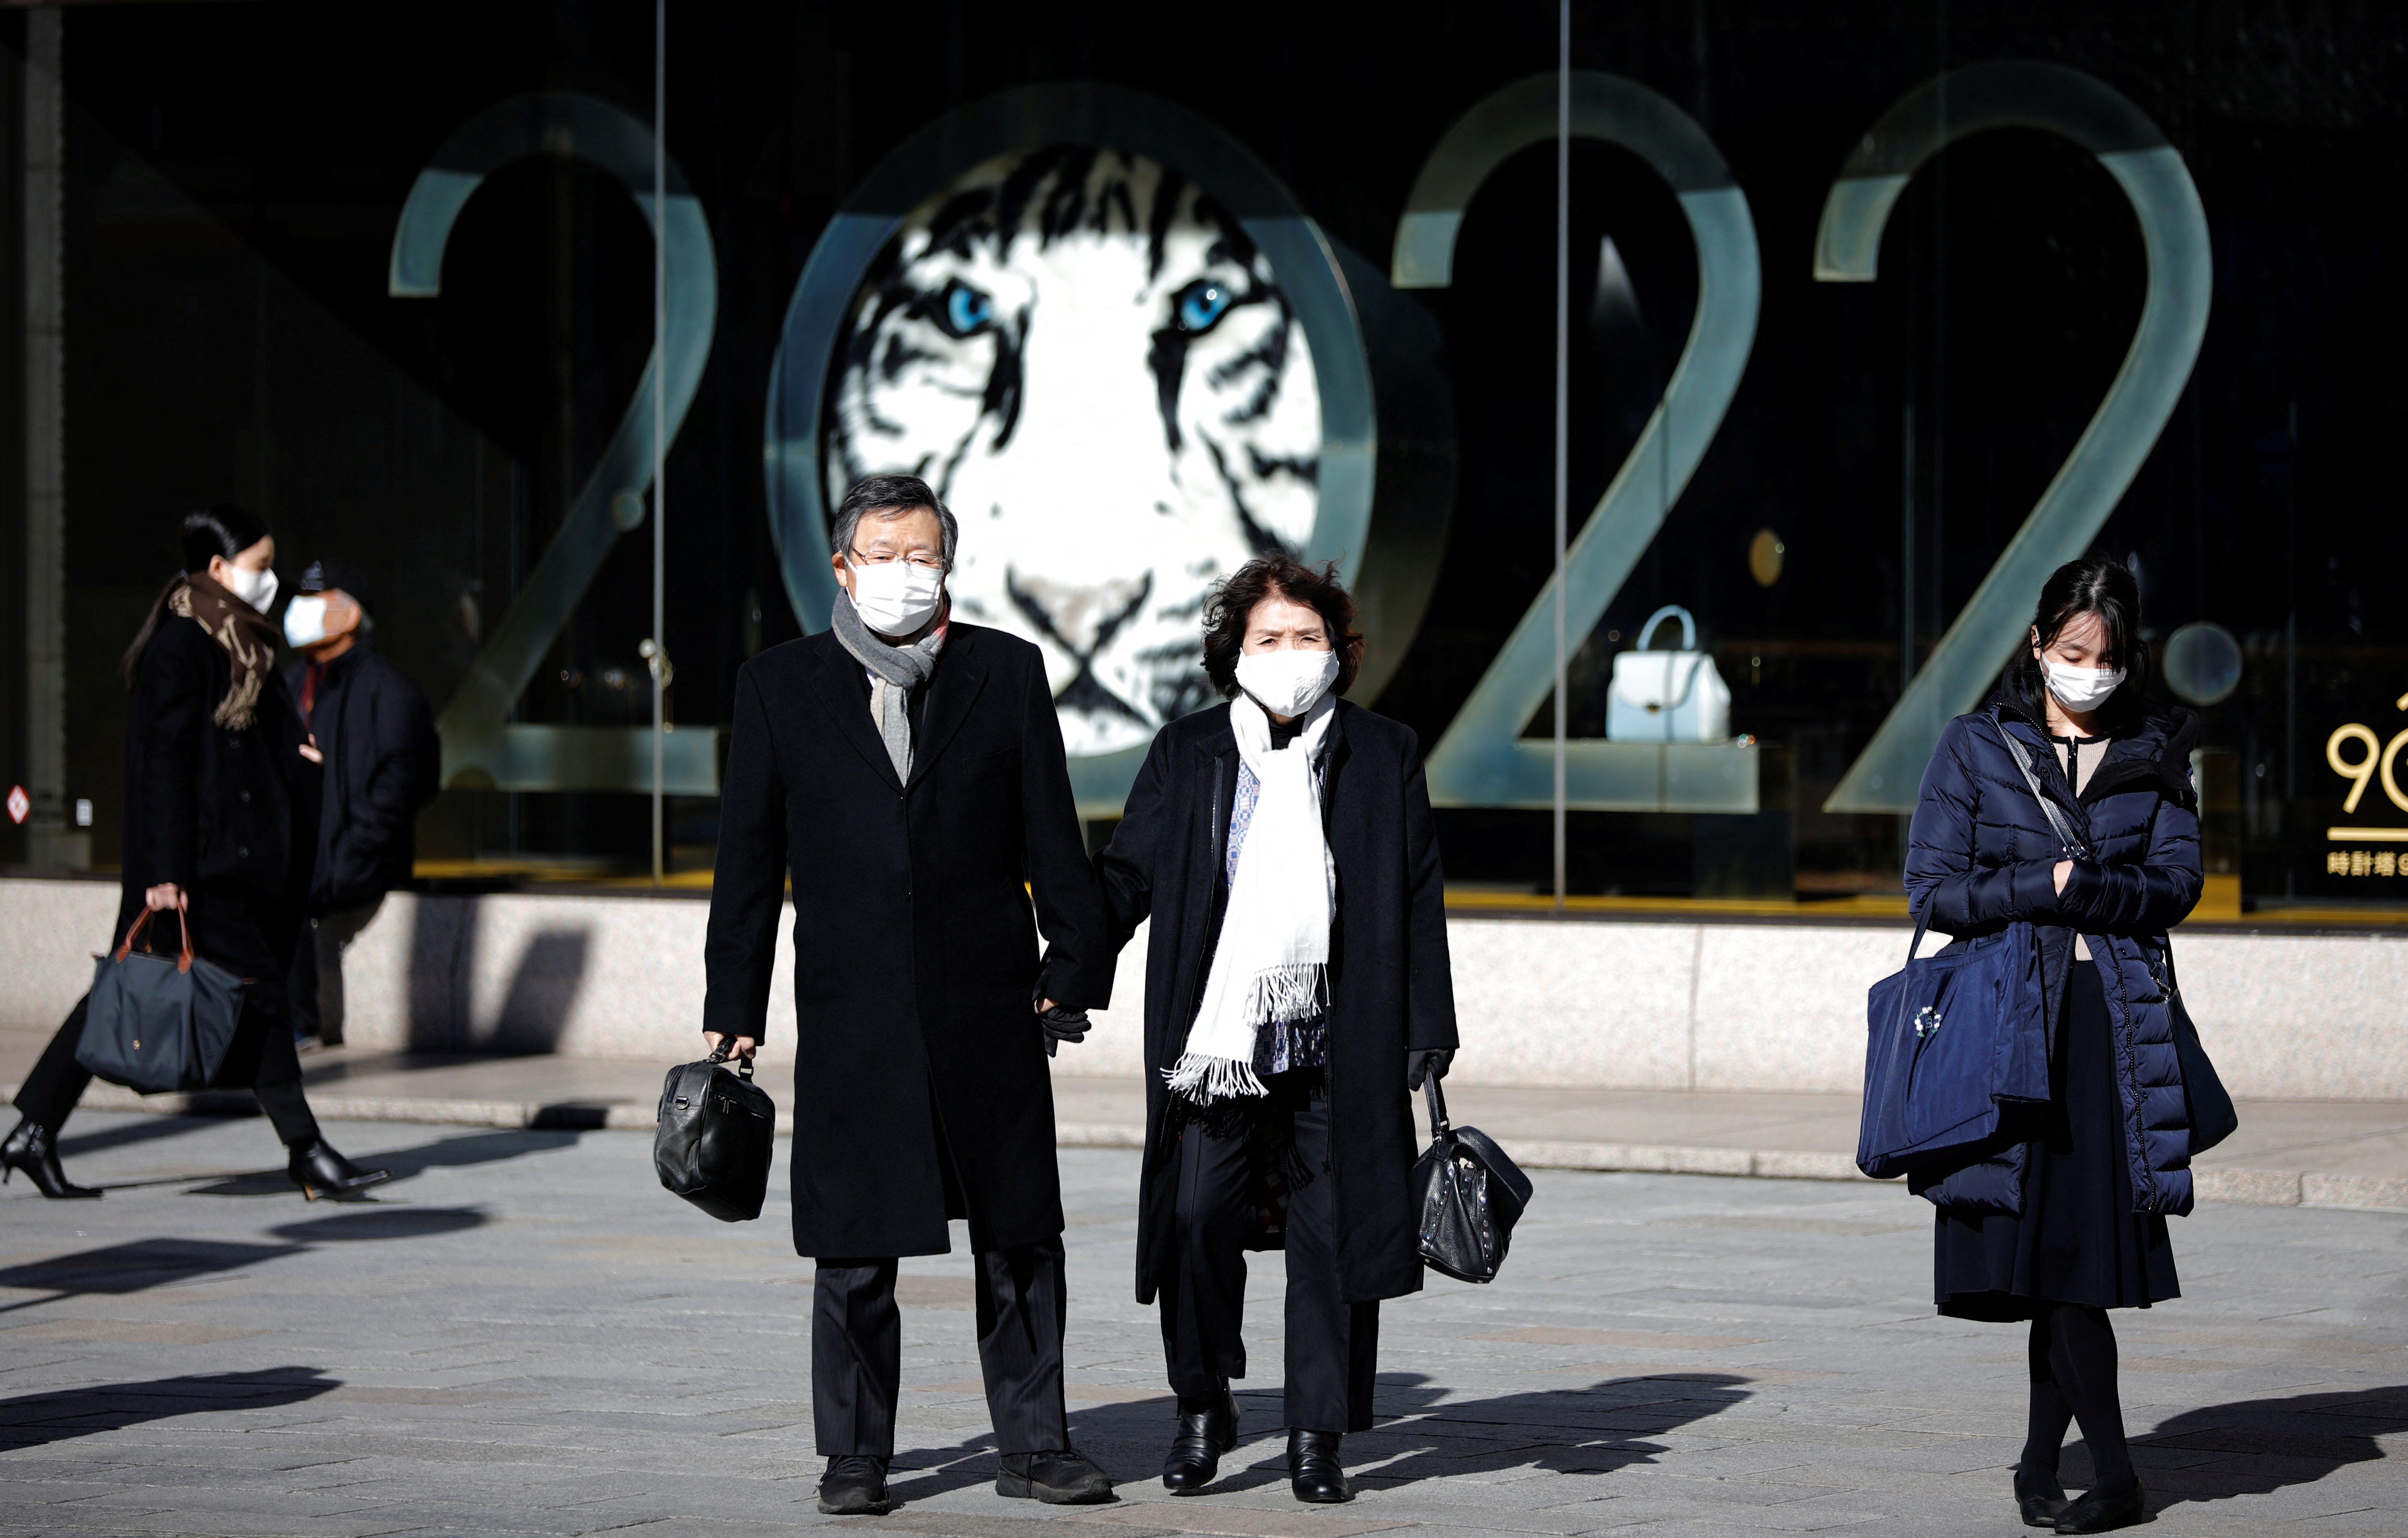 Personas con máscaras protectoras, en medio del brote de la enfermedad del coronavirus (COVID-19), se paran frente a un escaparate de unos grandes almacenes en un distrito comercial de Tokio, Japón, el 18 de enero de 2022. 2022 es el Año Nuevo Lunar chino del Tigre. REUTERS/Kim Kyung-Hoon